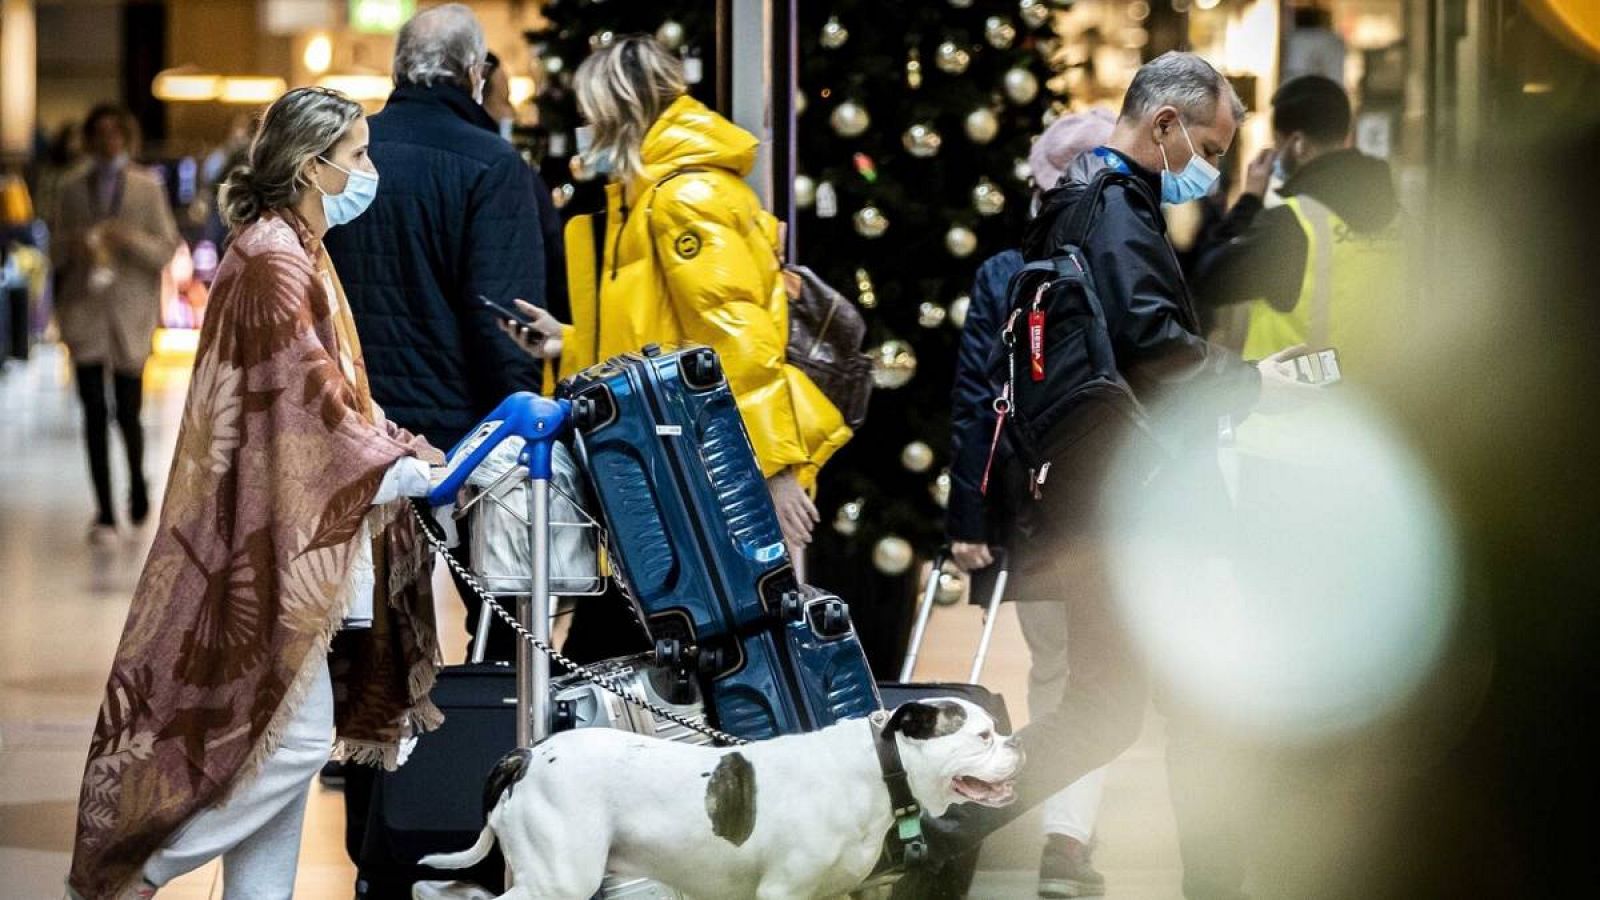 Pasajeros en el aeropuerto de Schiphol usan mascarillas mientras caminan en una terminal decorada de Navidad en el aeropuerto de Ámsterdam, Países Bajos.